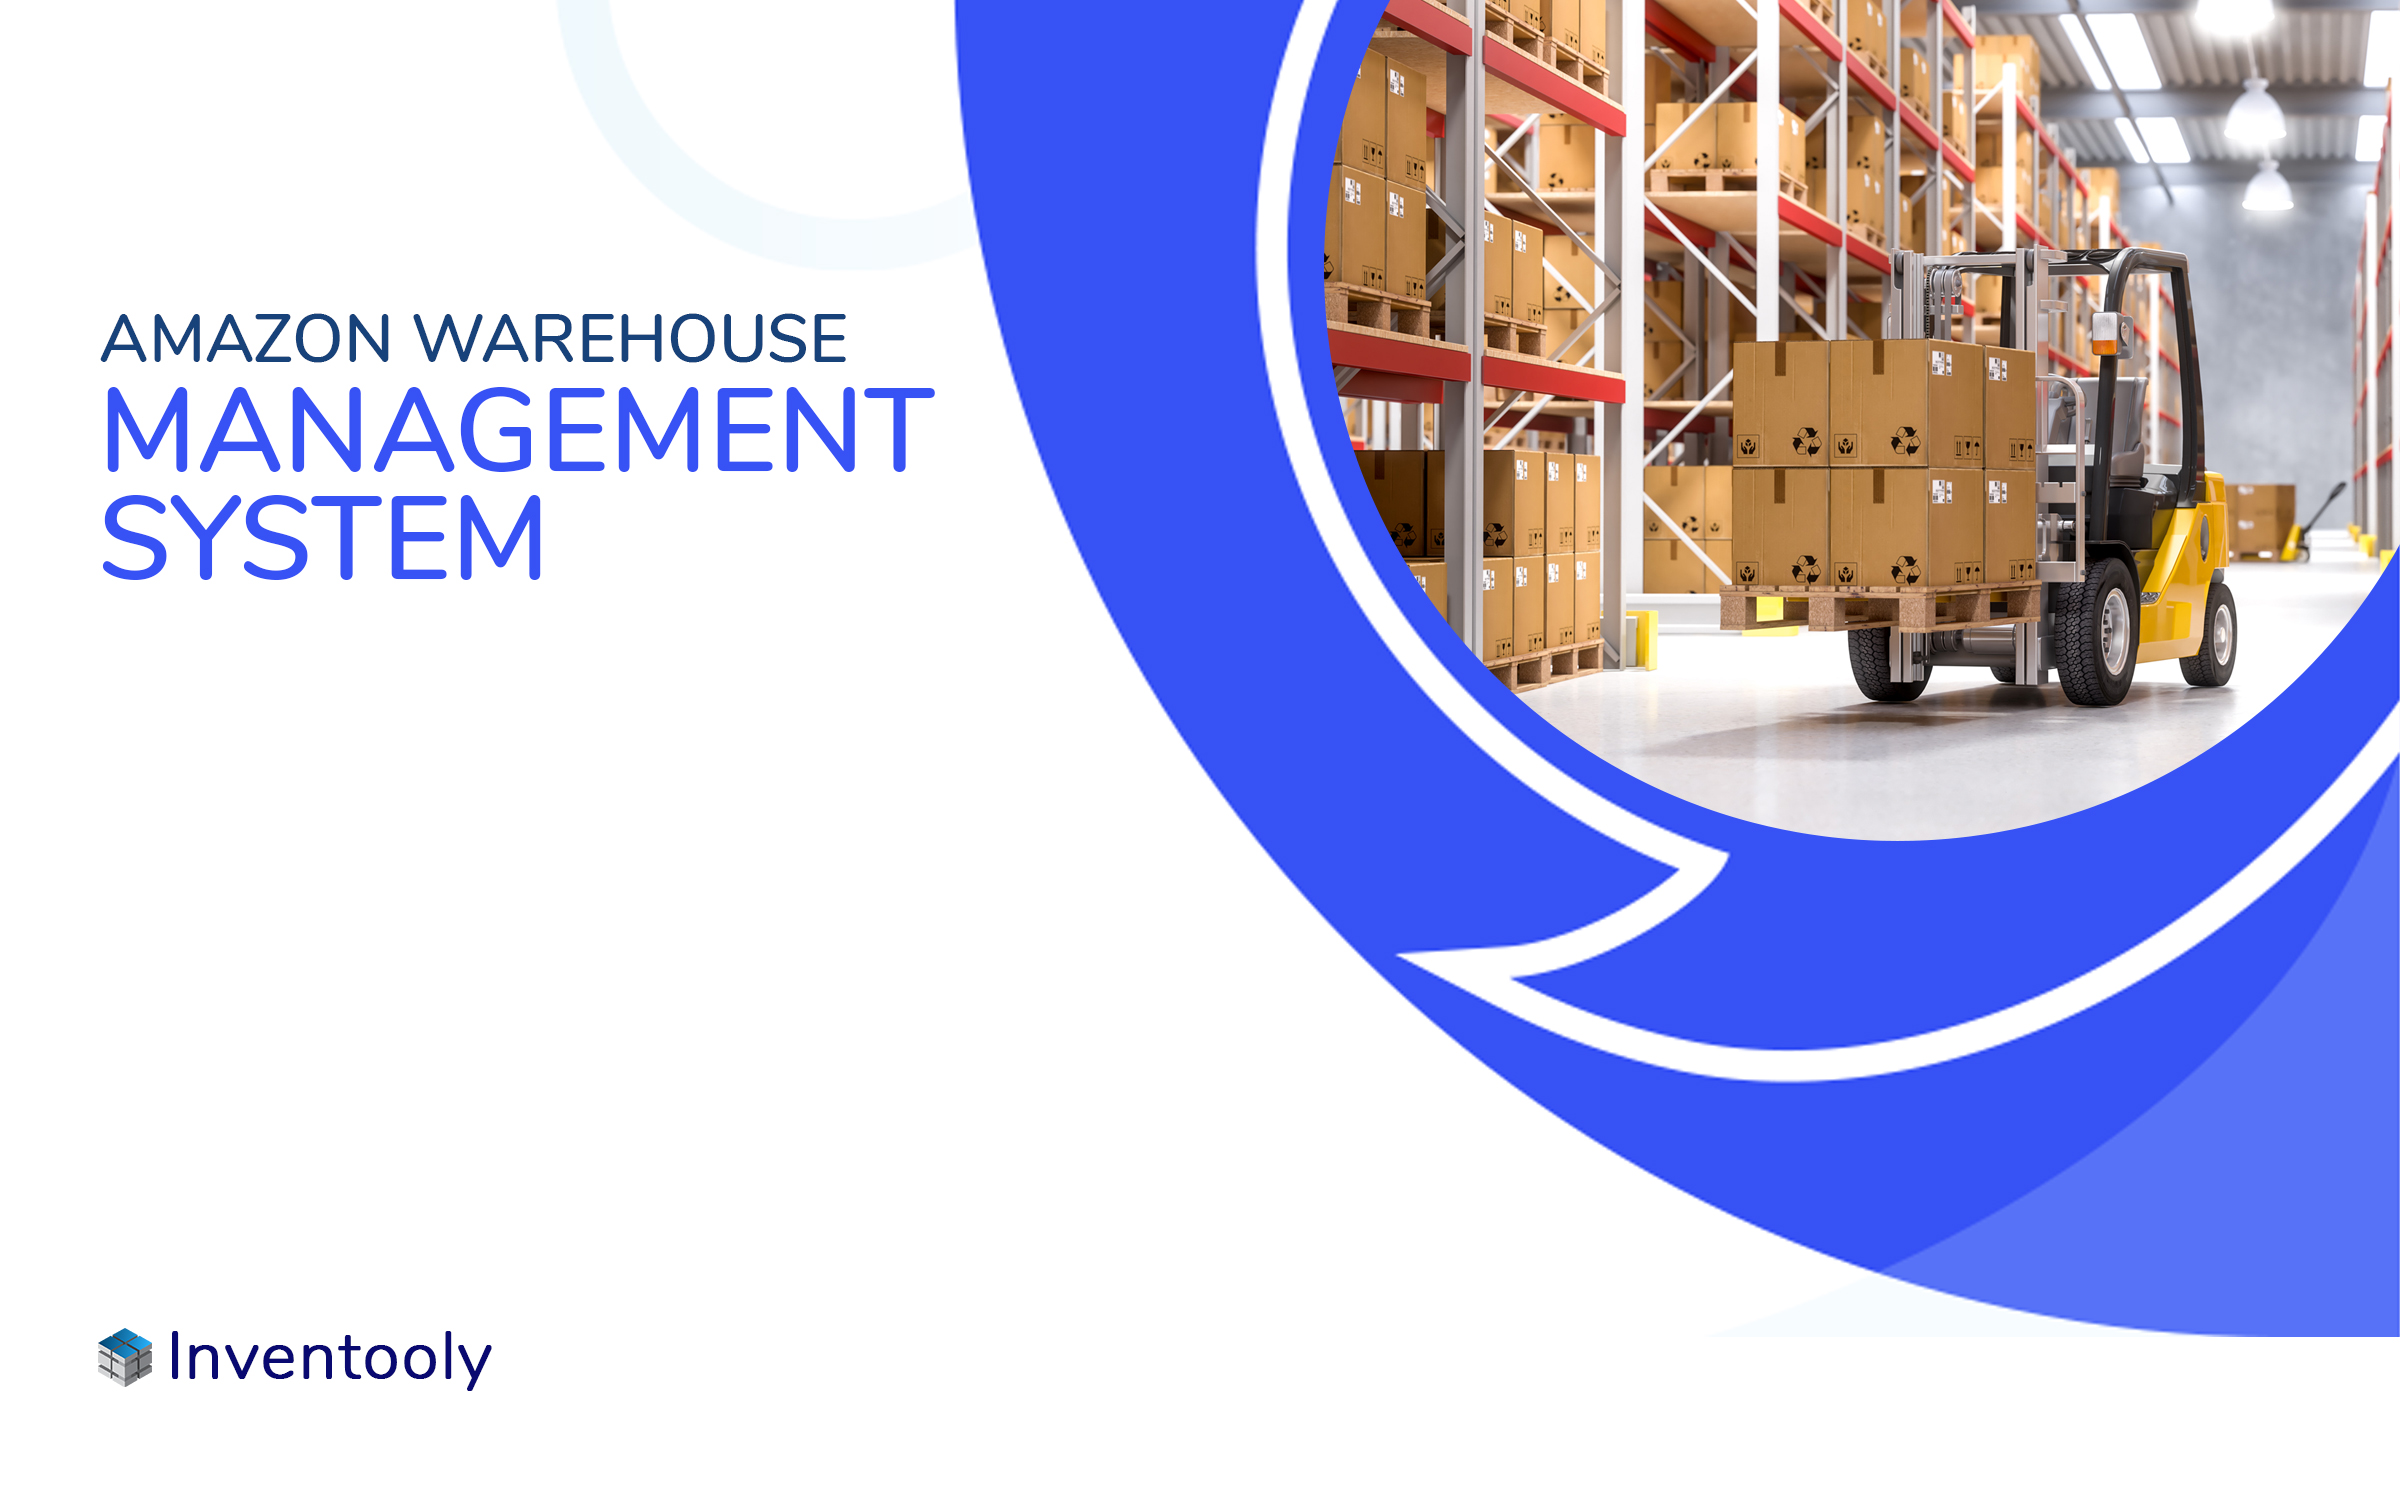 Amazon Warehouse Management System